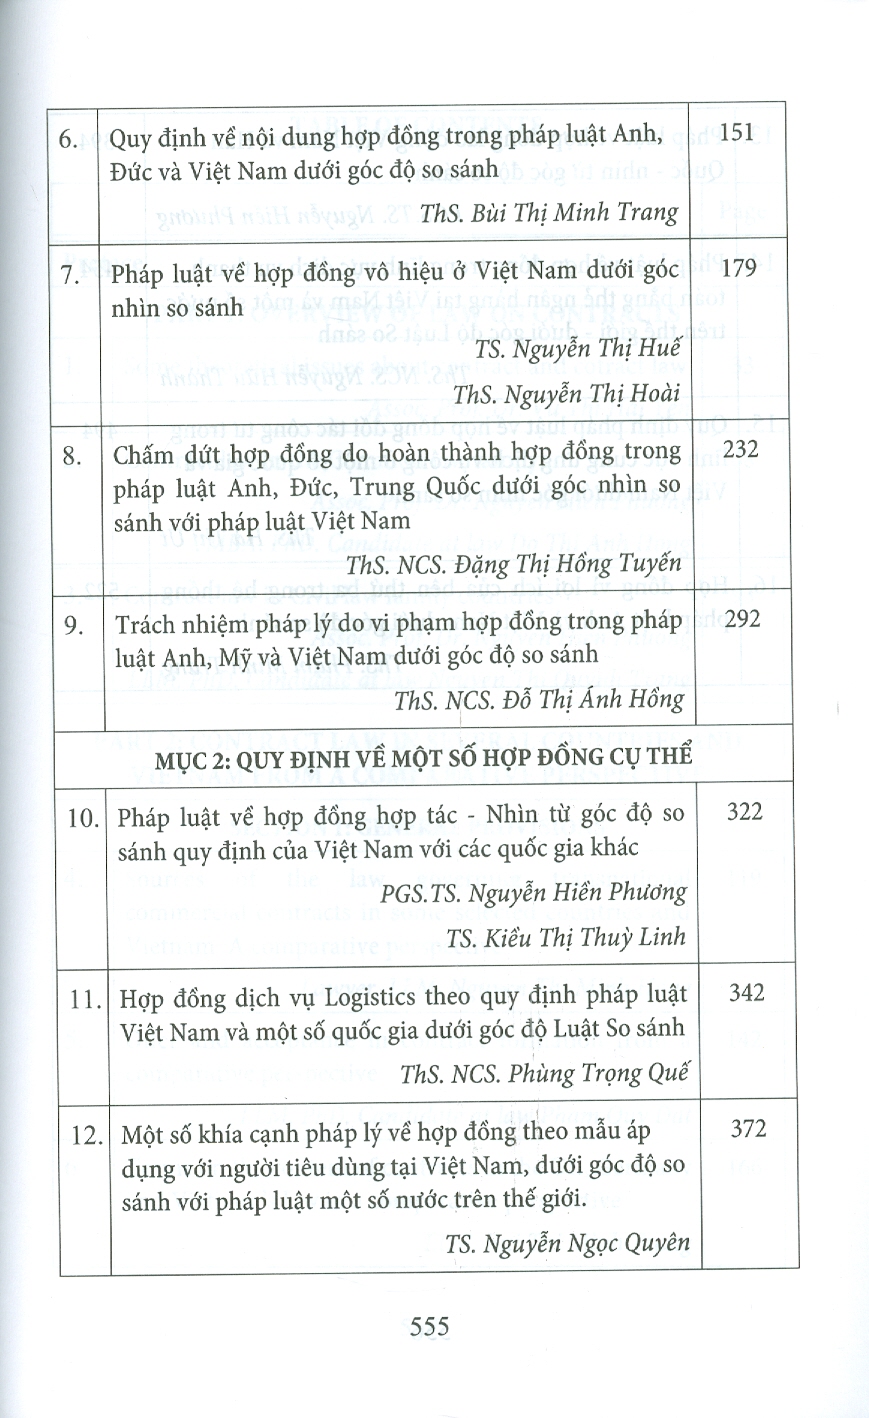 Pháp Luật Về Hợp Đồng Dưới Góc Nhìn Luật Học So Sánh (Sách chuyên khảo song ngữ Anh - Việt)